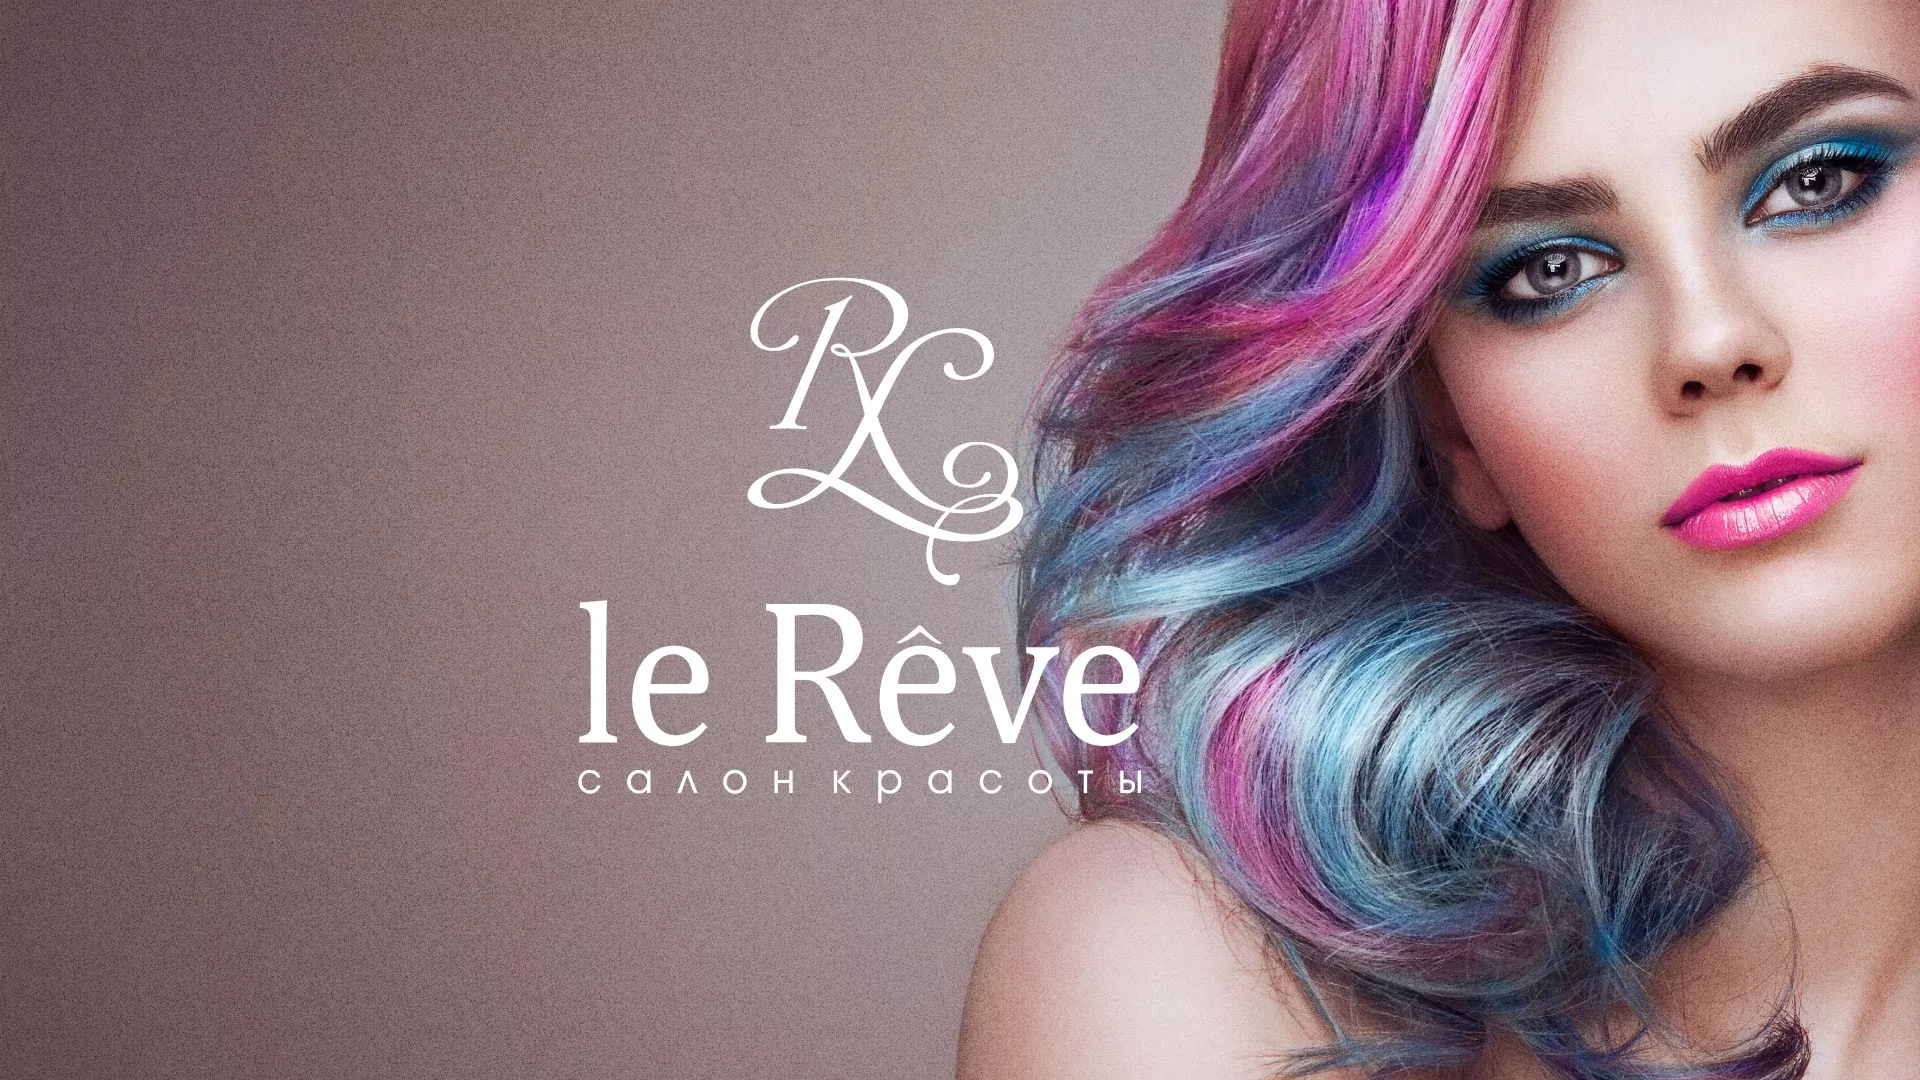 Создание сайта для салона красоты «Le Reve» в Чернушке